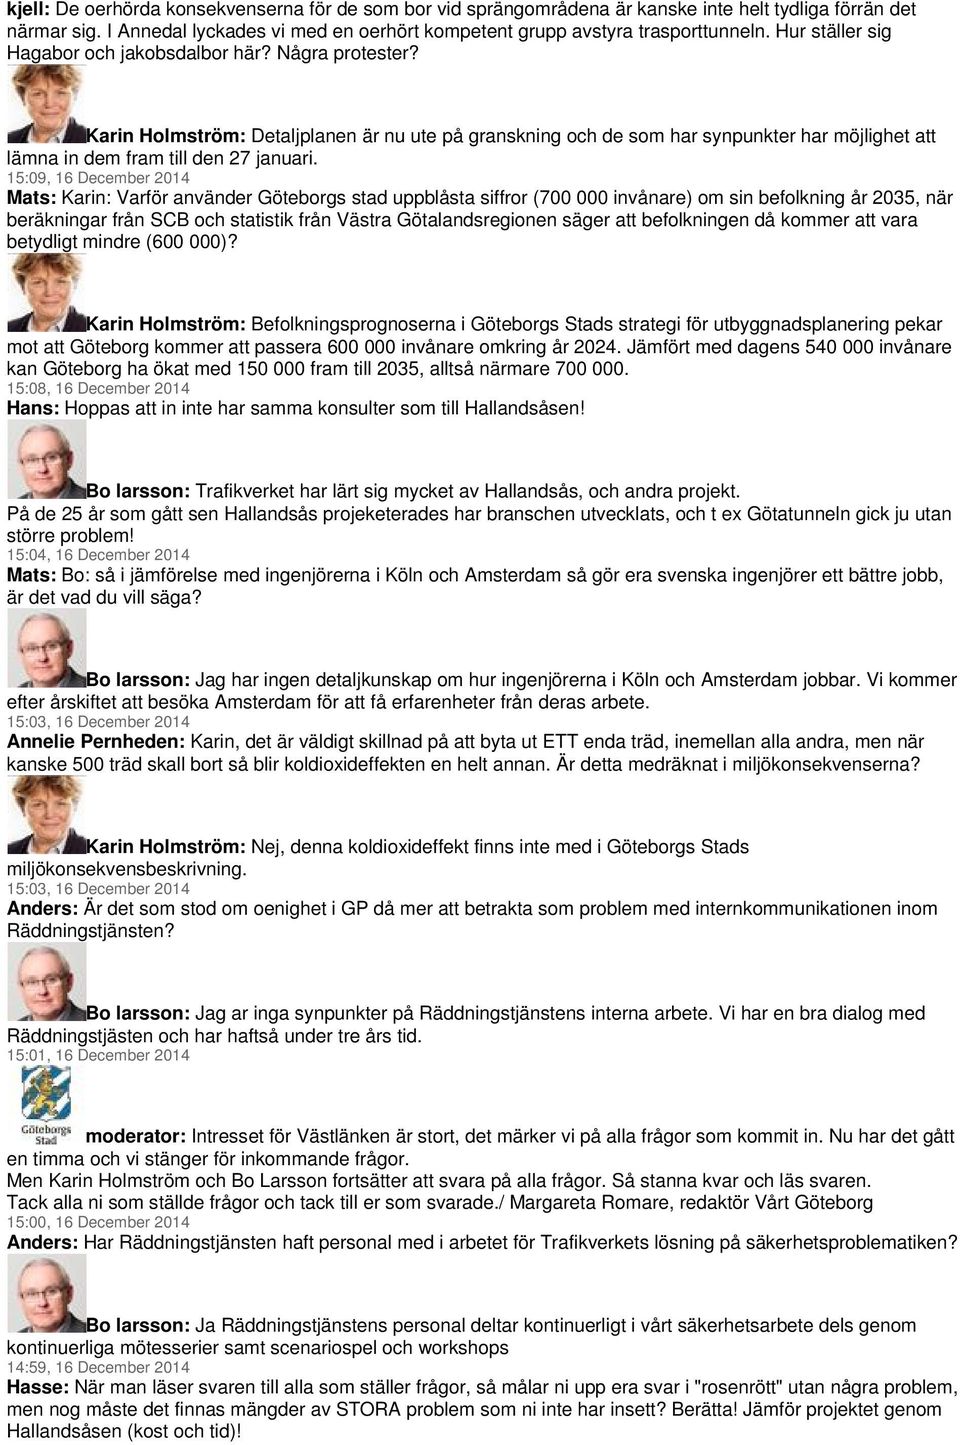 15:09, 16 December 2014 Mats: Karin: Varför använder Göteborgs stad uppblåsta siffror (700 000 invånare) om sin befolkning år 2035, när beräkningar från SCB och statistik från Västra